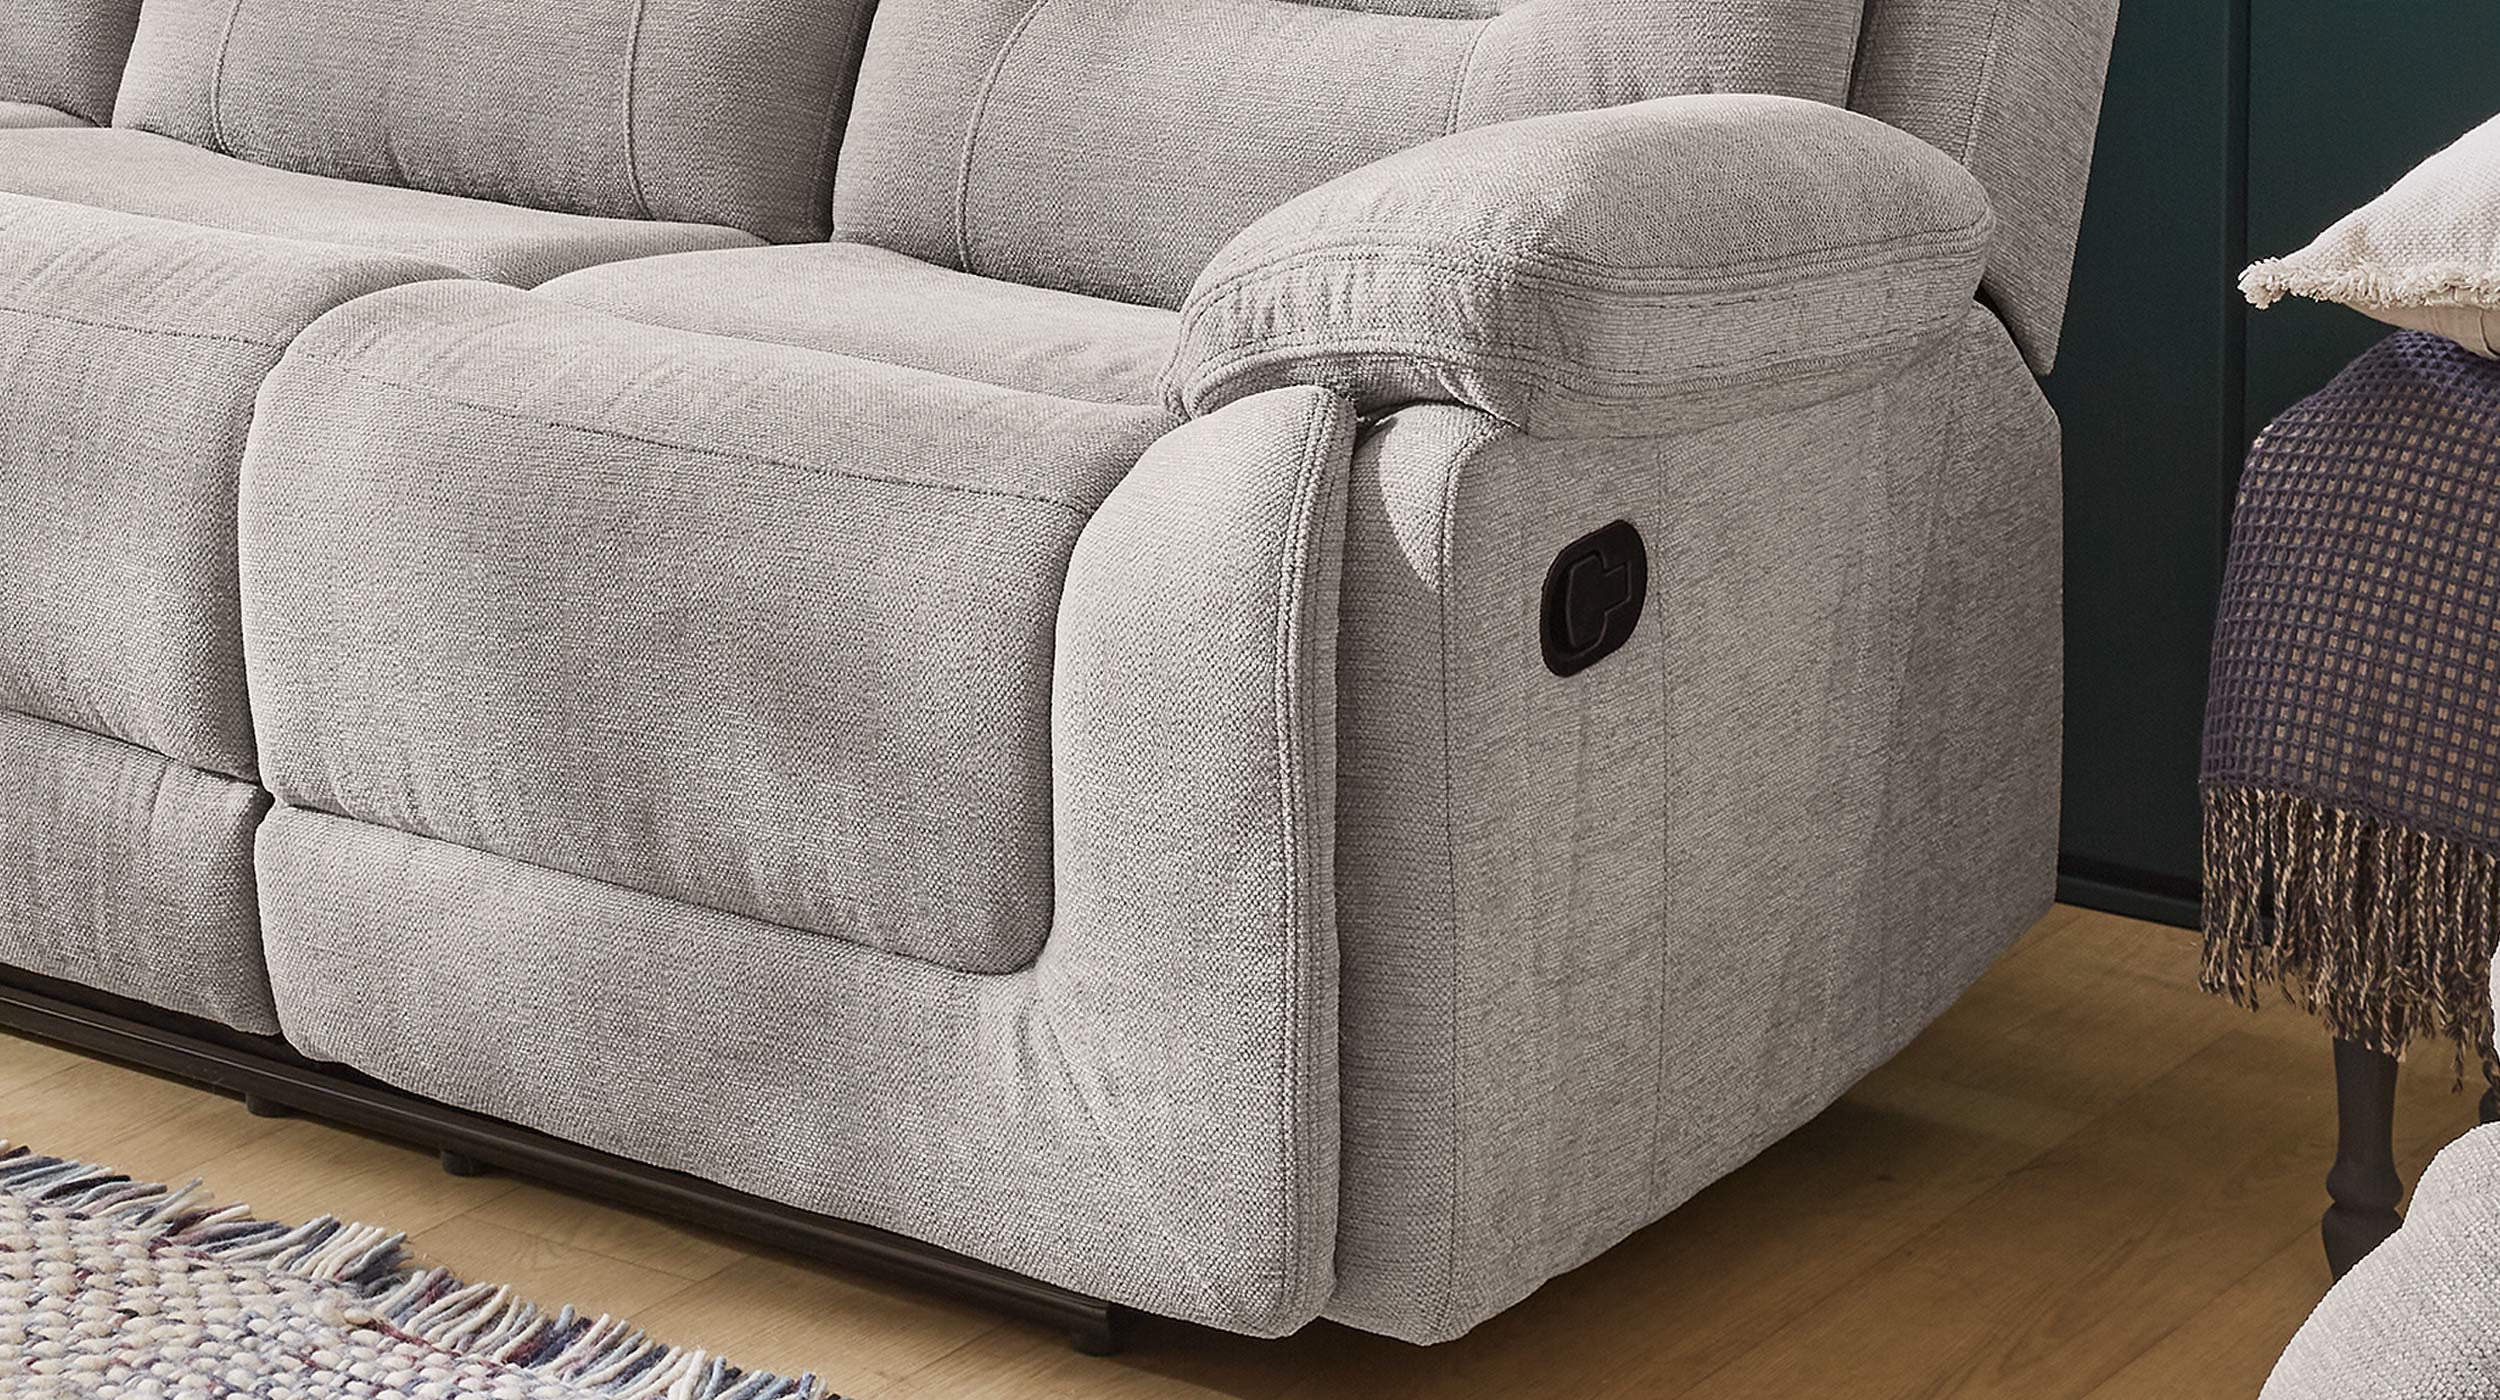 Einzelsofa 3-Sitzer grau 220 cm - mit Relaxfunktion - SYLT